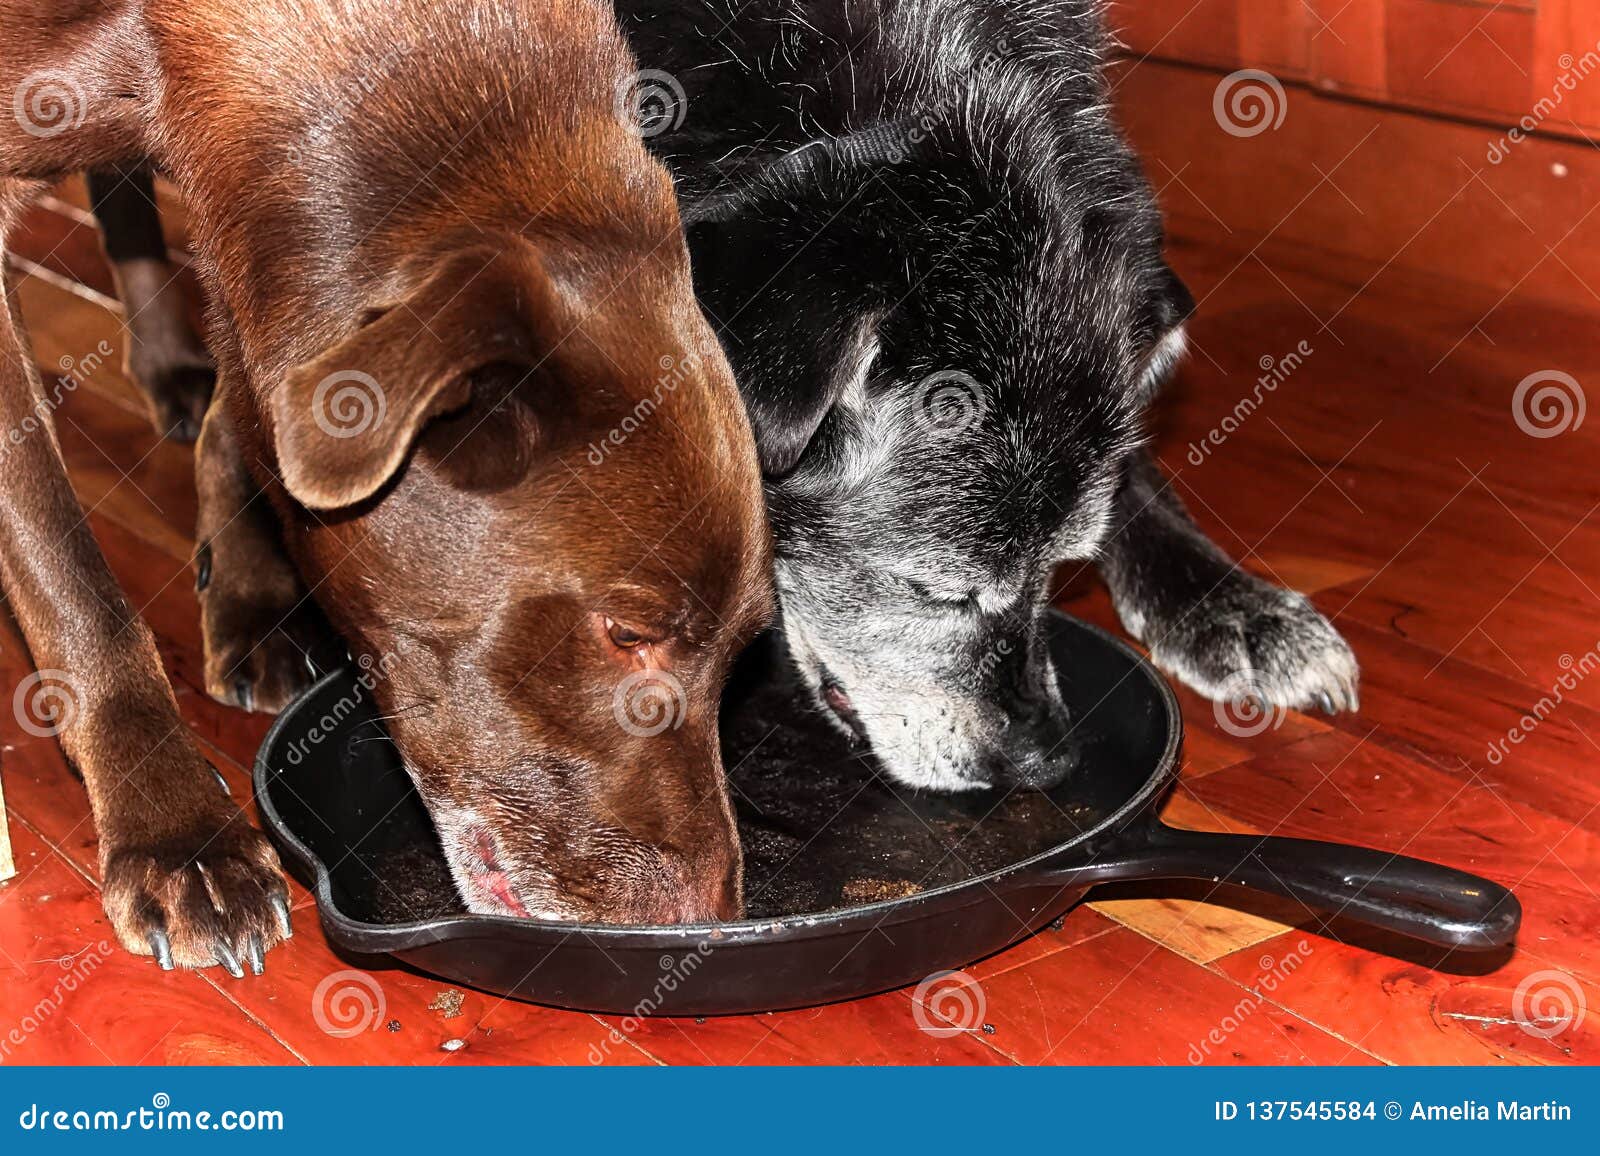 Лижет пол. Собака облизывается пол. Собачья тарелка. Собака облизывает тарелку. Собака облизывает пол.